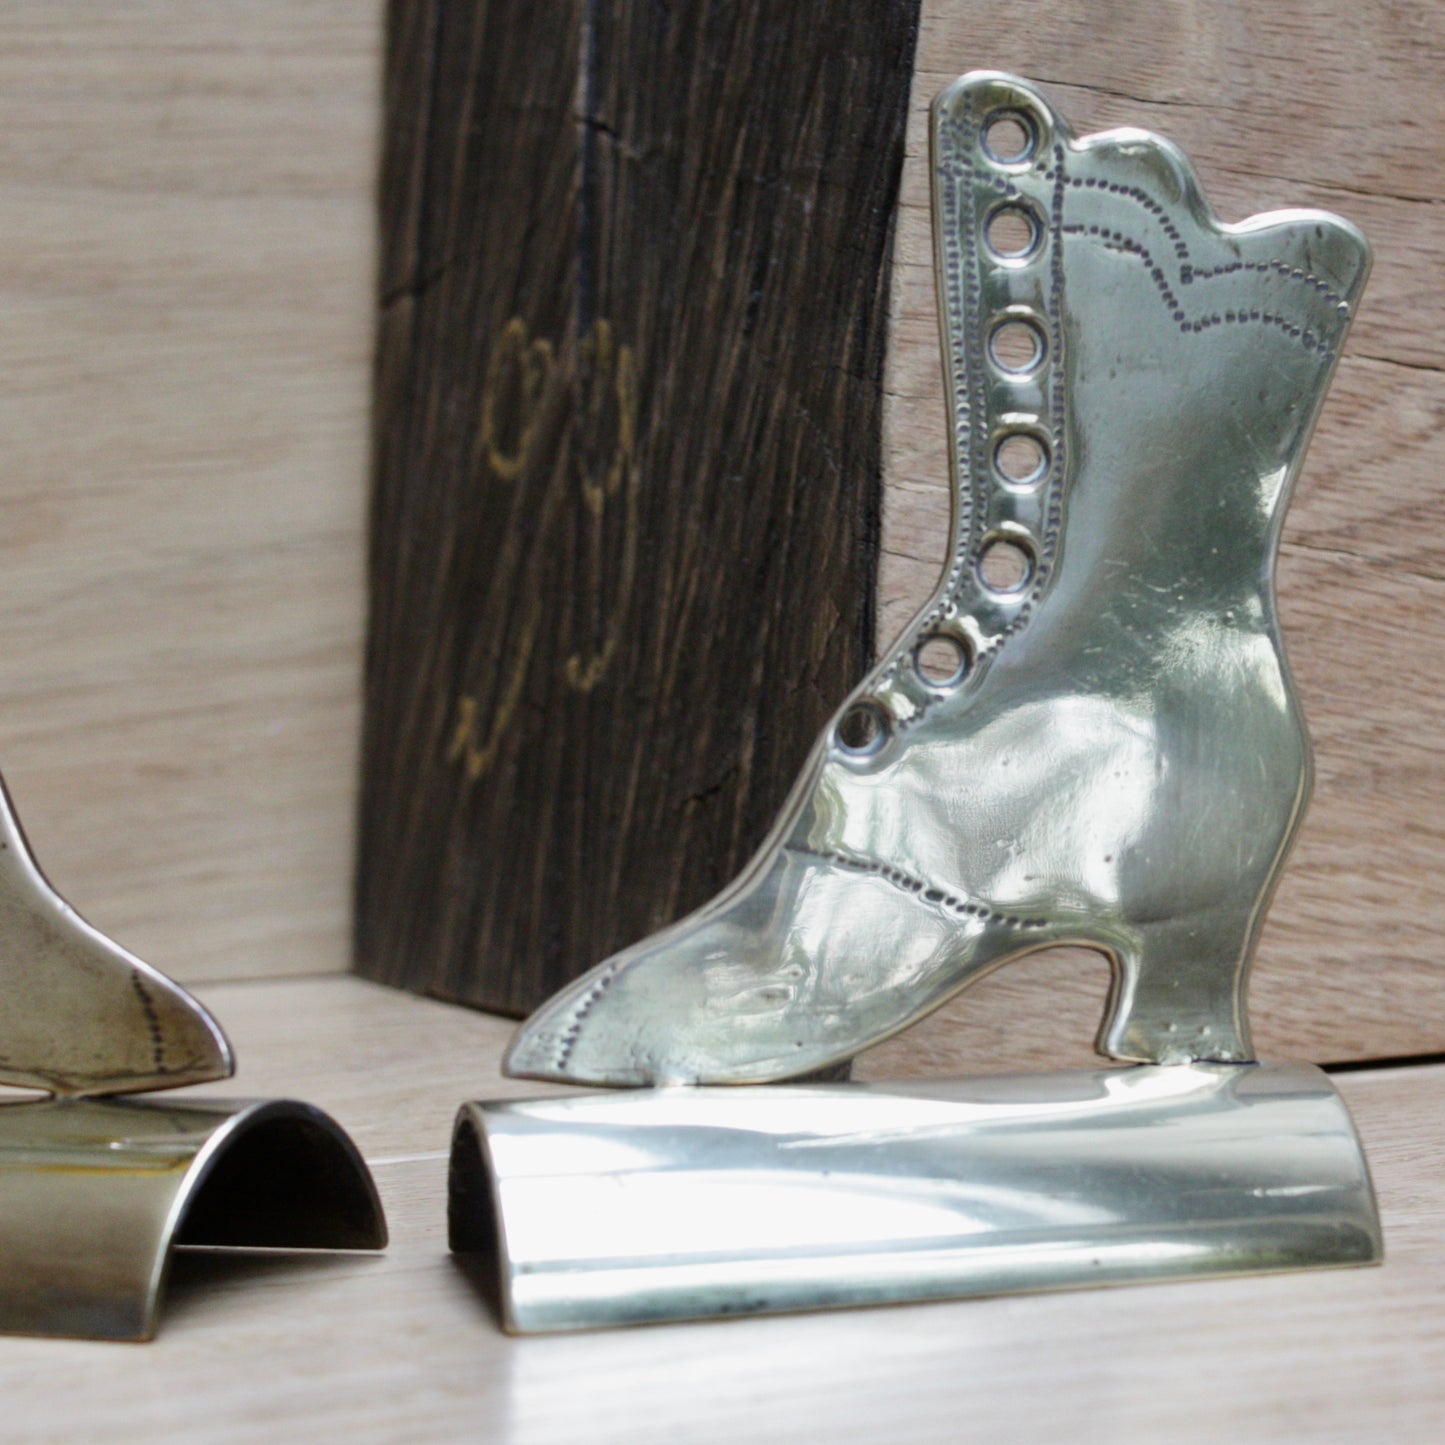 
                  
                    a pair of antique folk art mantlepiece brass boots
                  
                